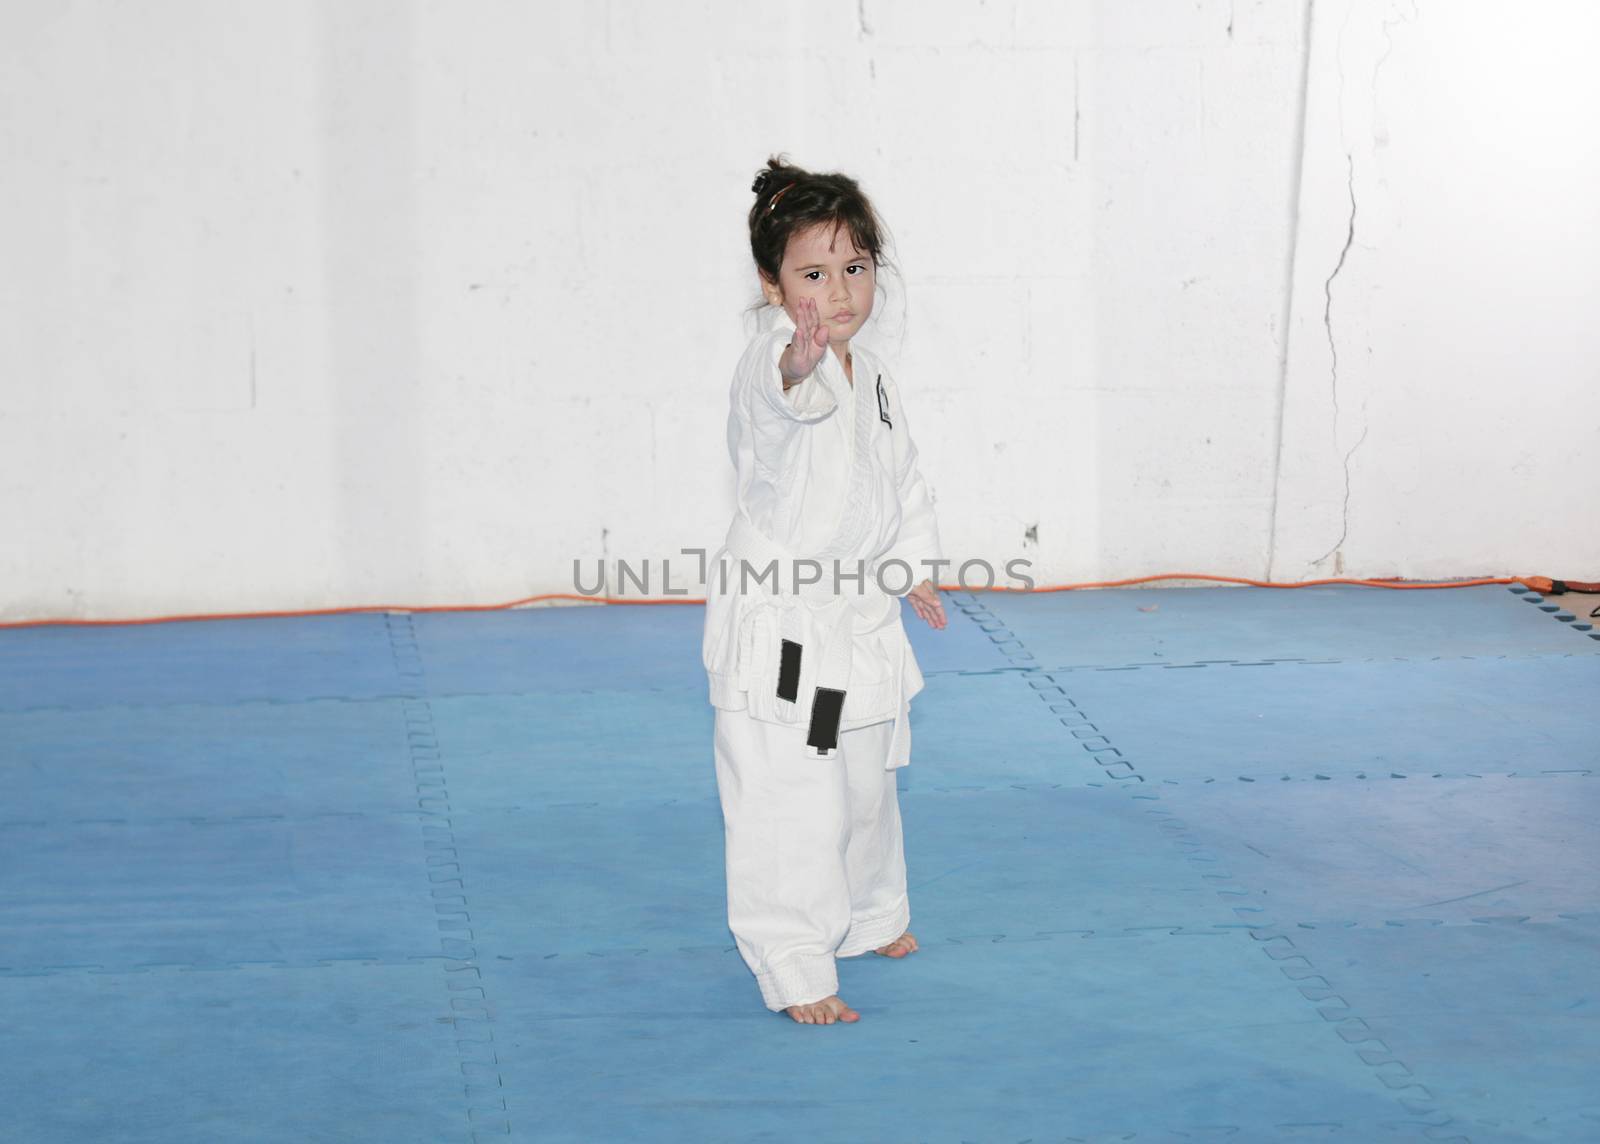 Little girl practice karate